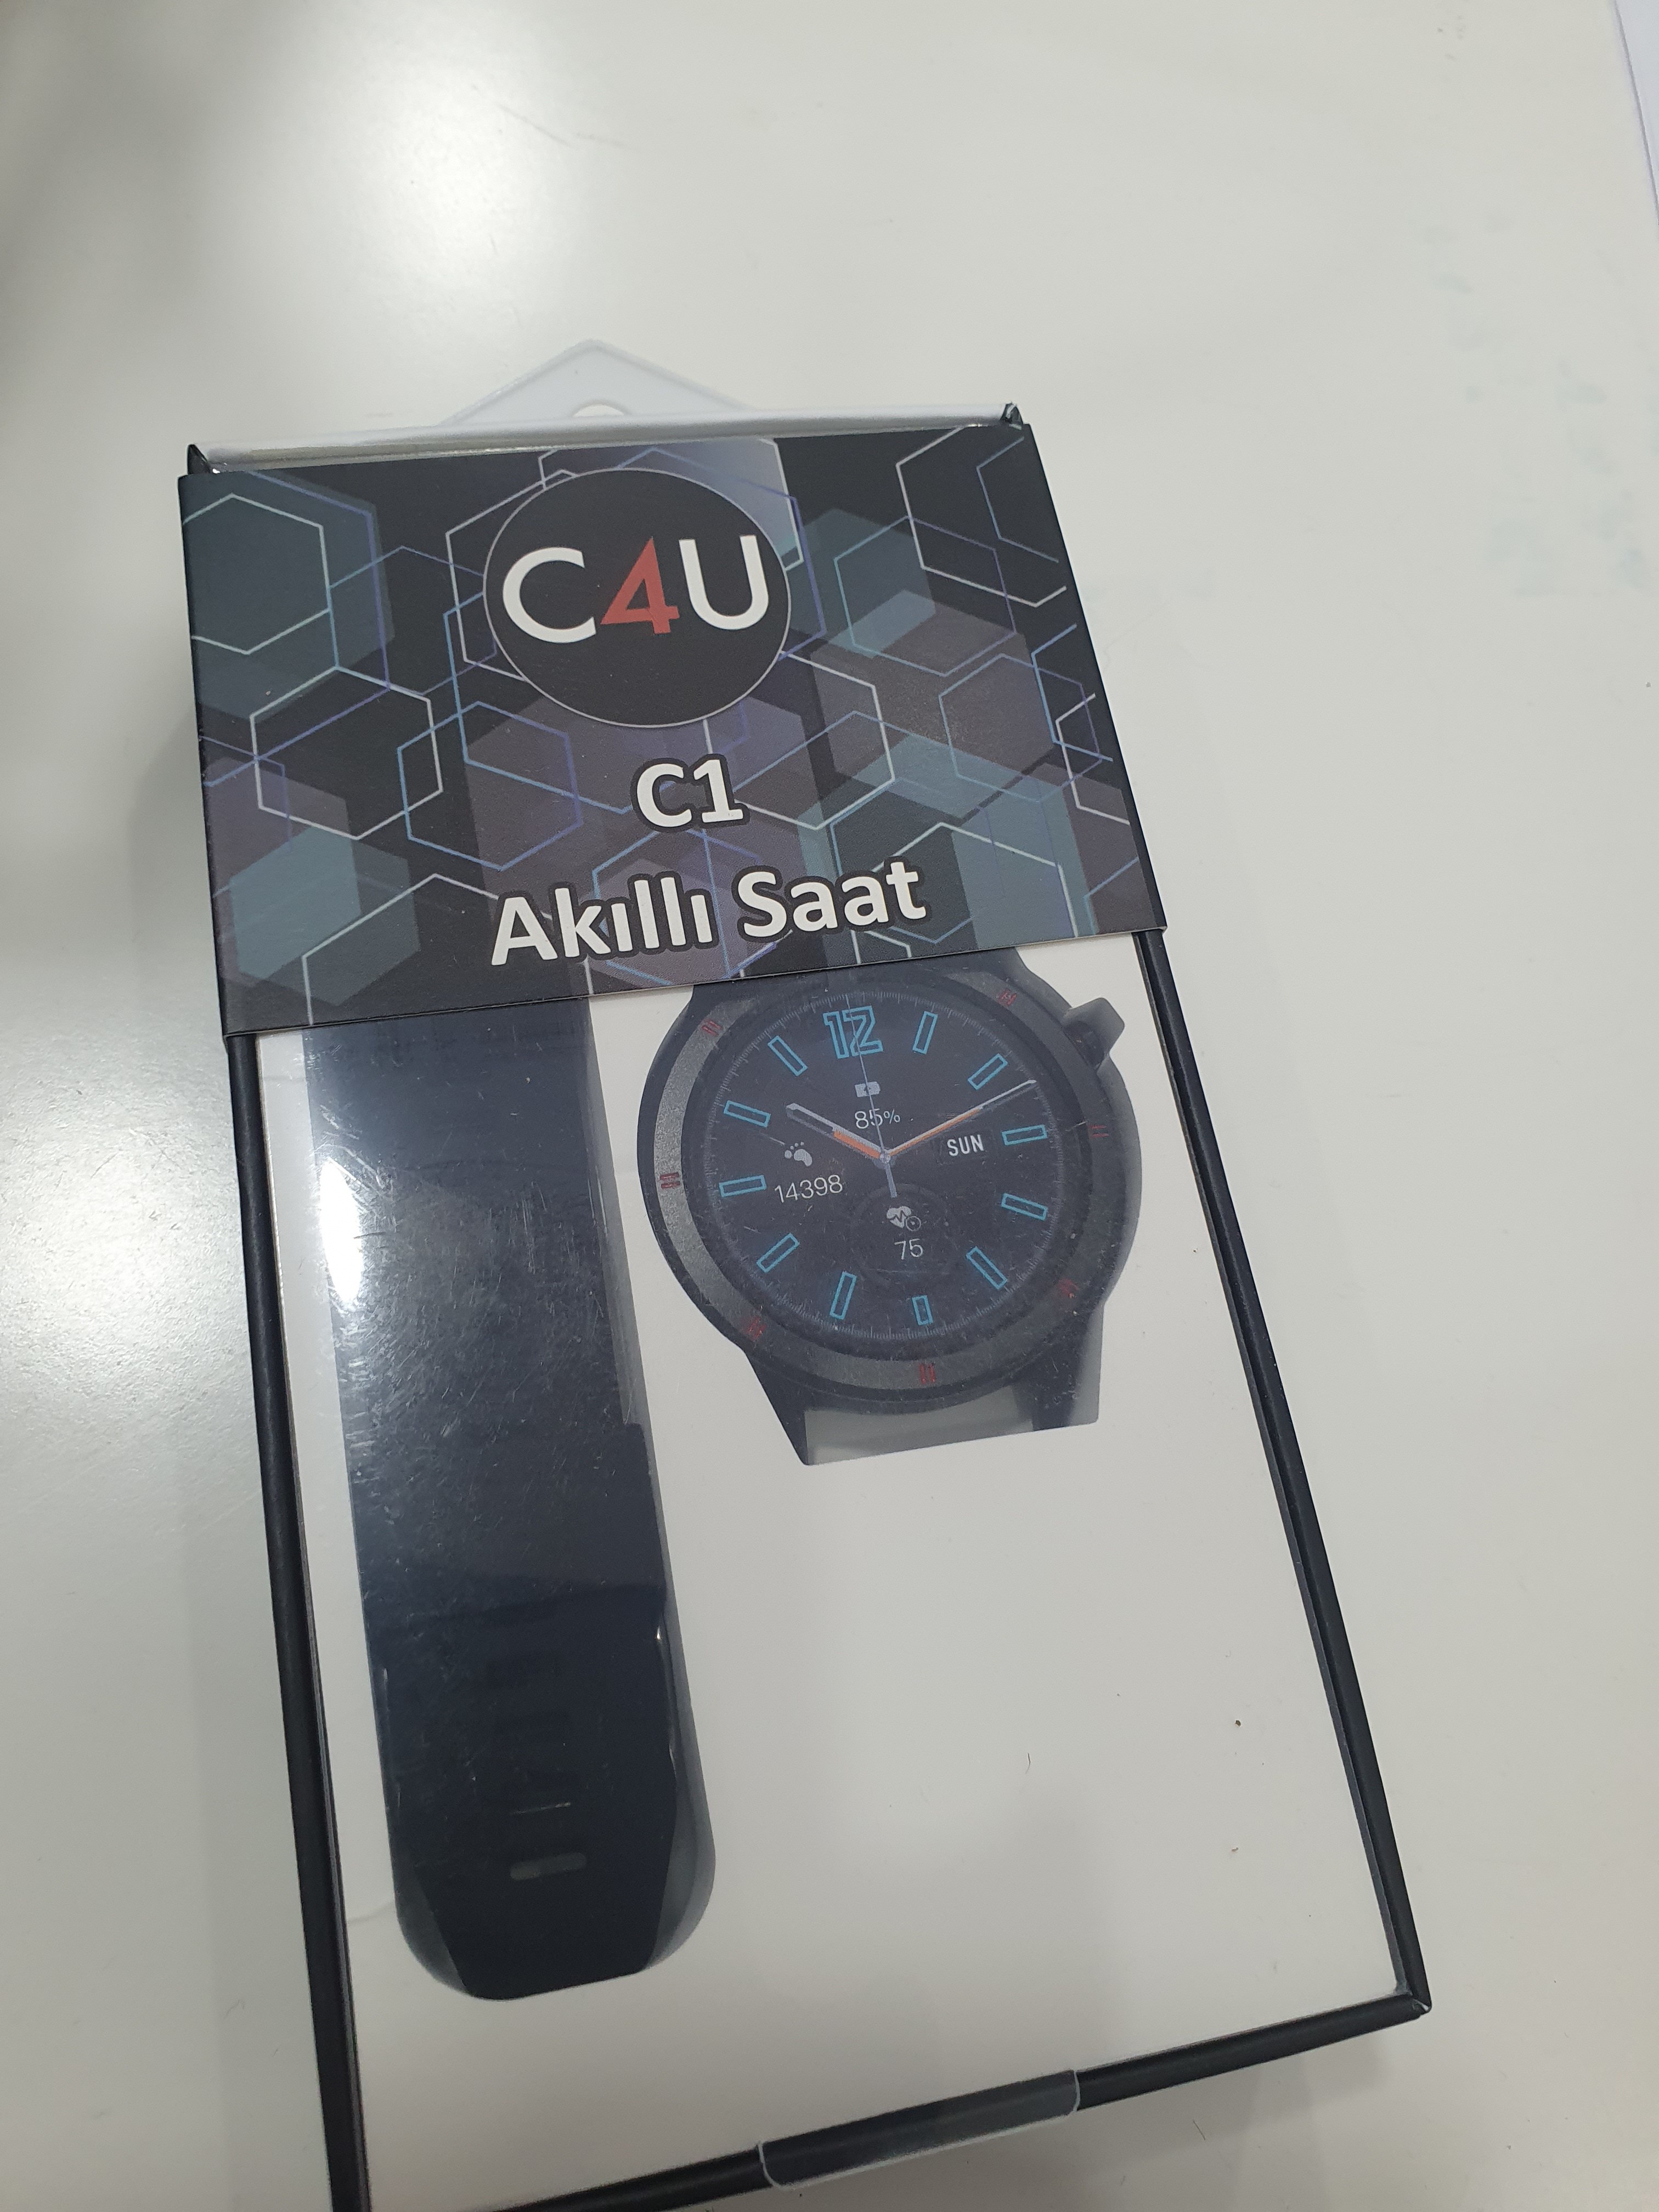 Case 4U C1 Akıllı Saat İnceleme